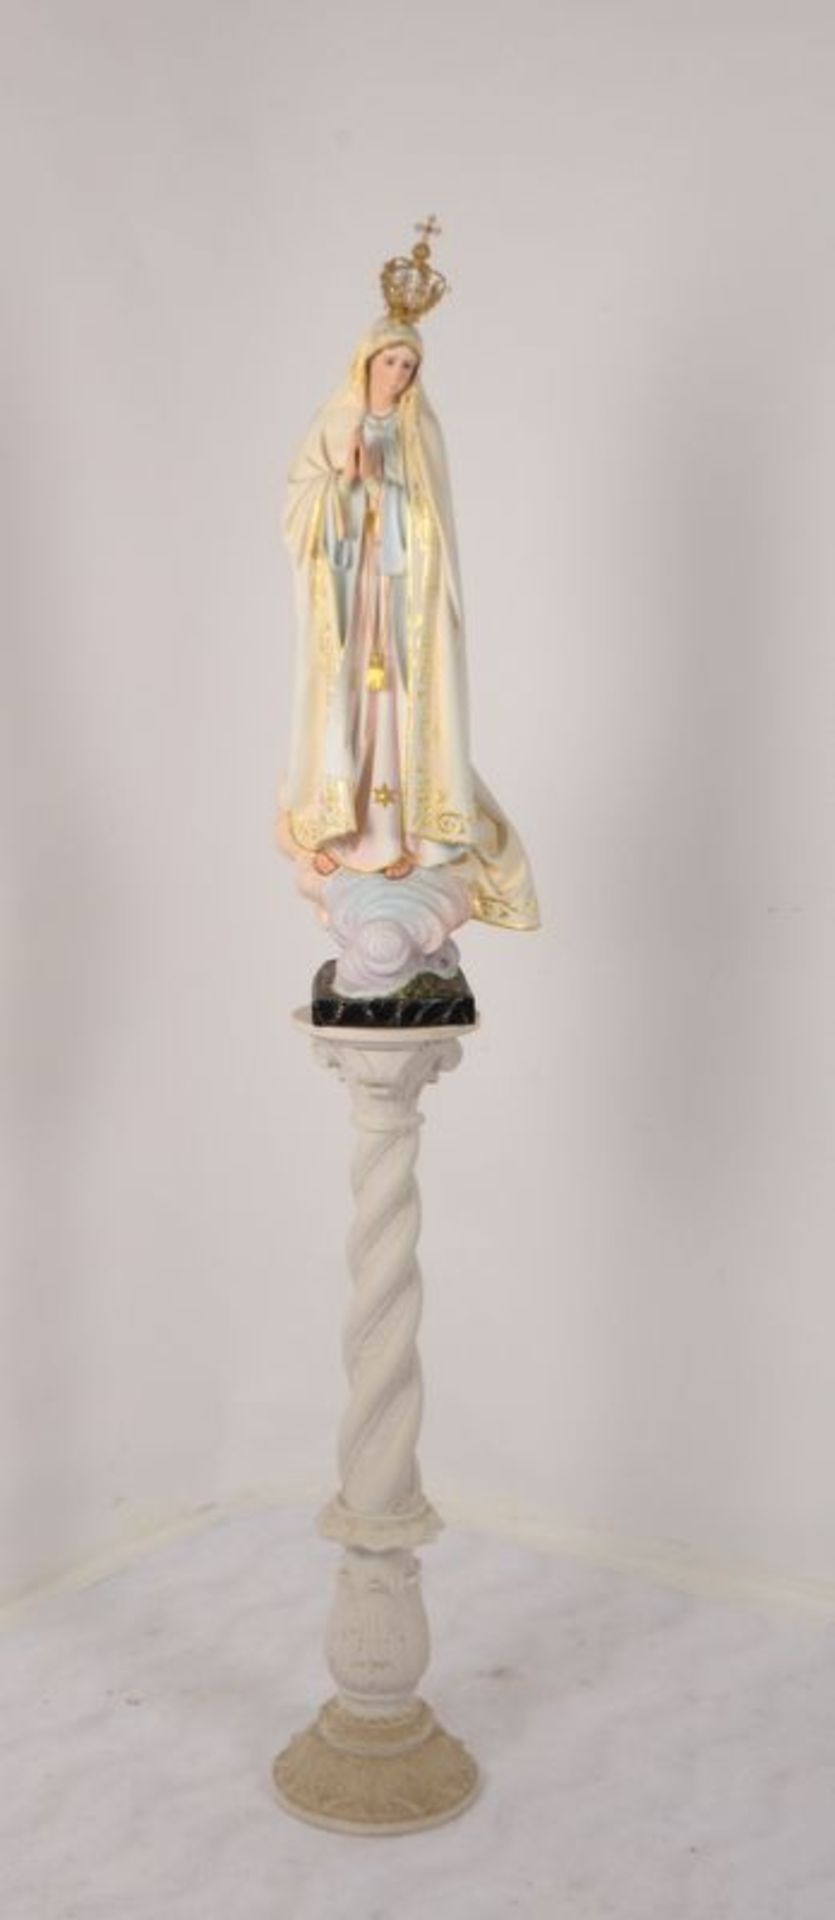 Gro&szlig;e Marienfigur, Massek&ouml;rper, mehrfarbig staffiert, seitlich bezeichnet &#039;Boaventur - Image 2 of 3